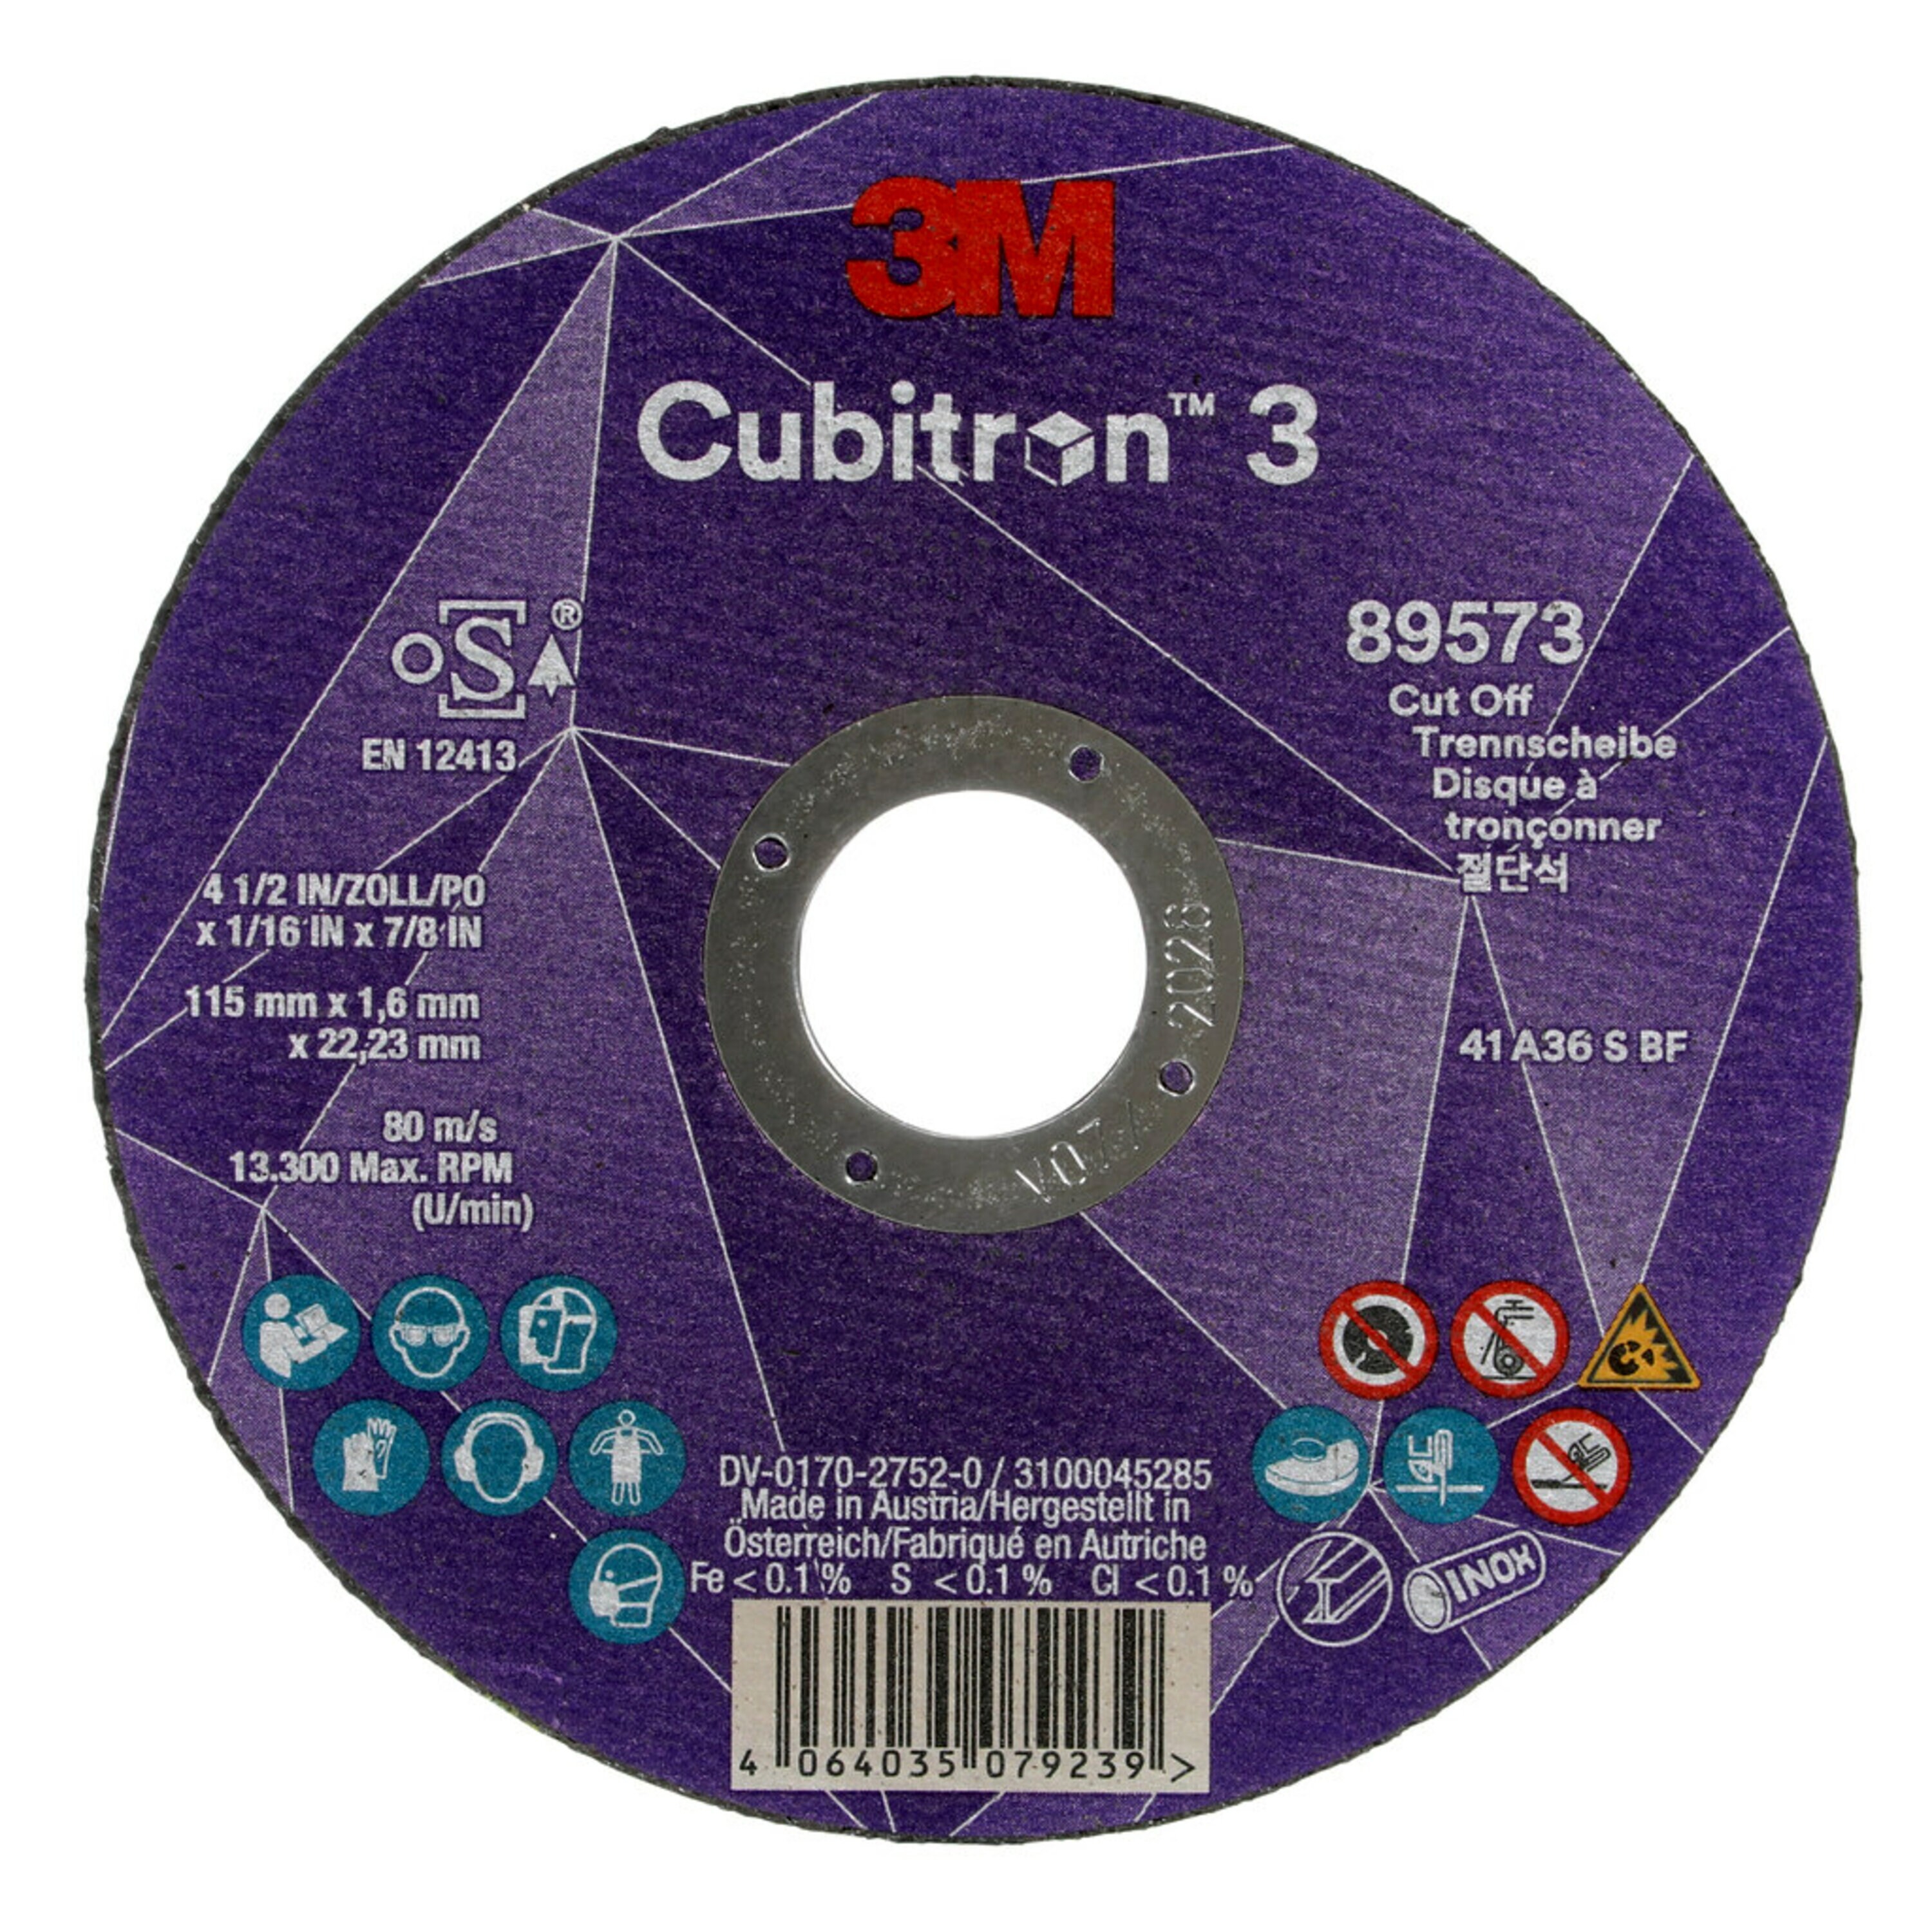 3M Cubitron 3 Disque à tronçonner, 115 mm, 1,6 mm, 22,23 mm, 36 , type 41 #89573